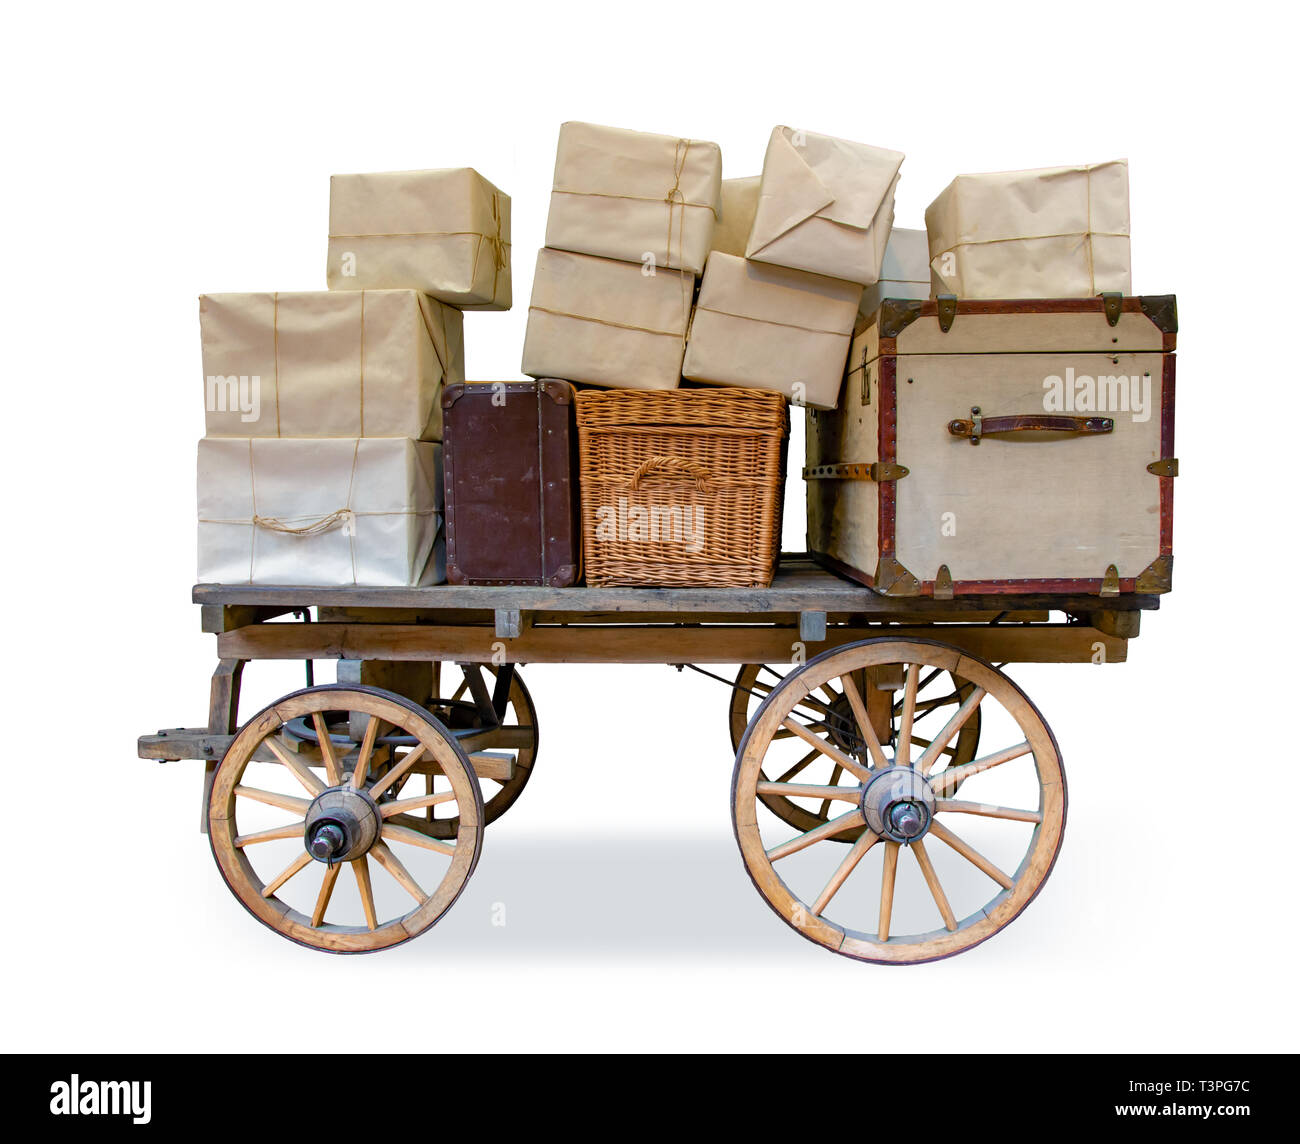 Die historische Post Schlitten voller Versand, auf weißem Hintergrund. Viele Kartons mit Koffer und Brust auf alte e-cart. Stockfoto